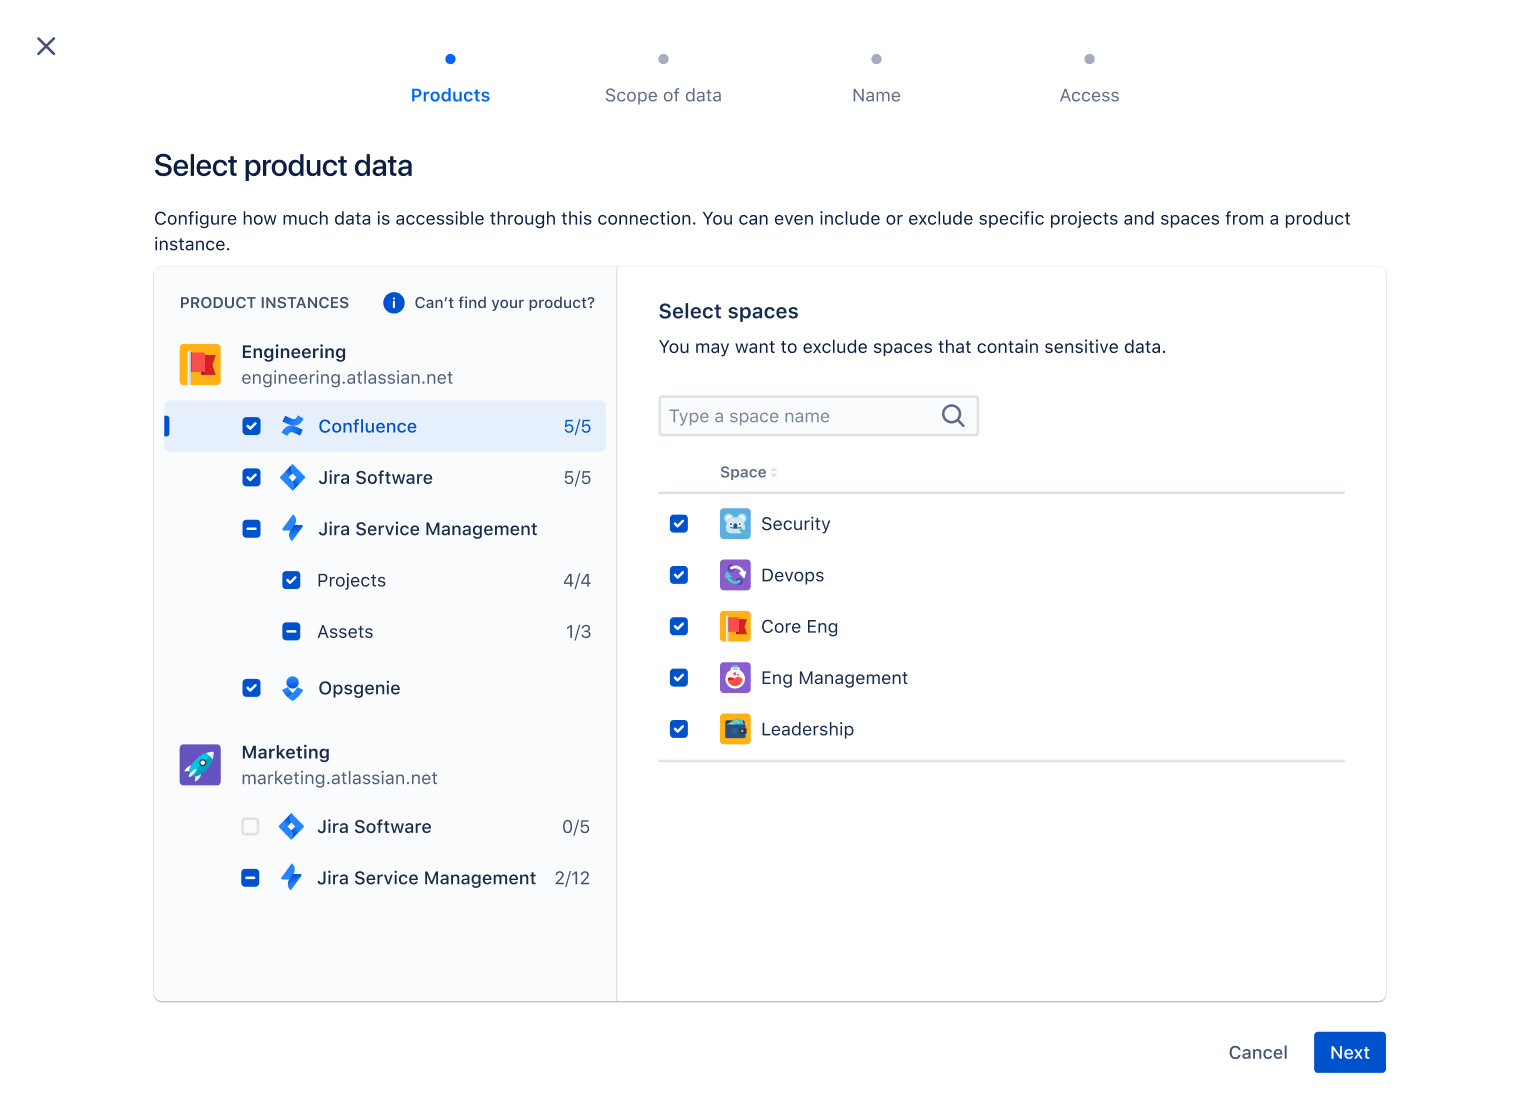 Ekran wyboru danych produktu pokazuje, jak wybrać dane pomiarowe z kwalifikujących się produktów Atlassian.